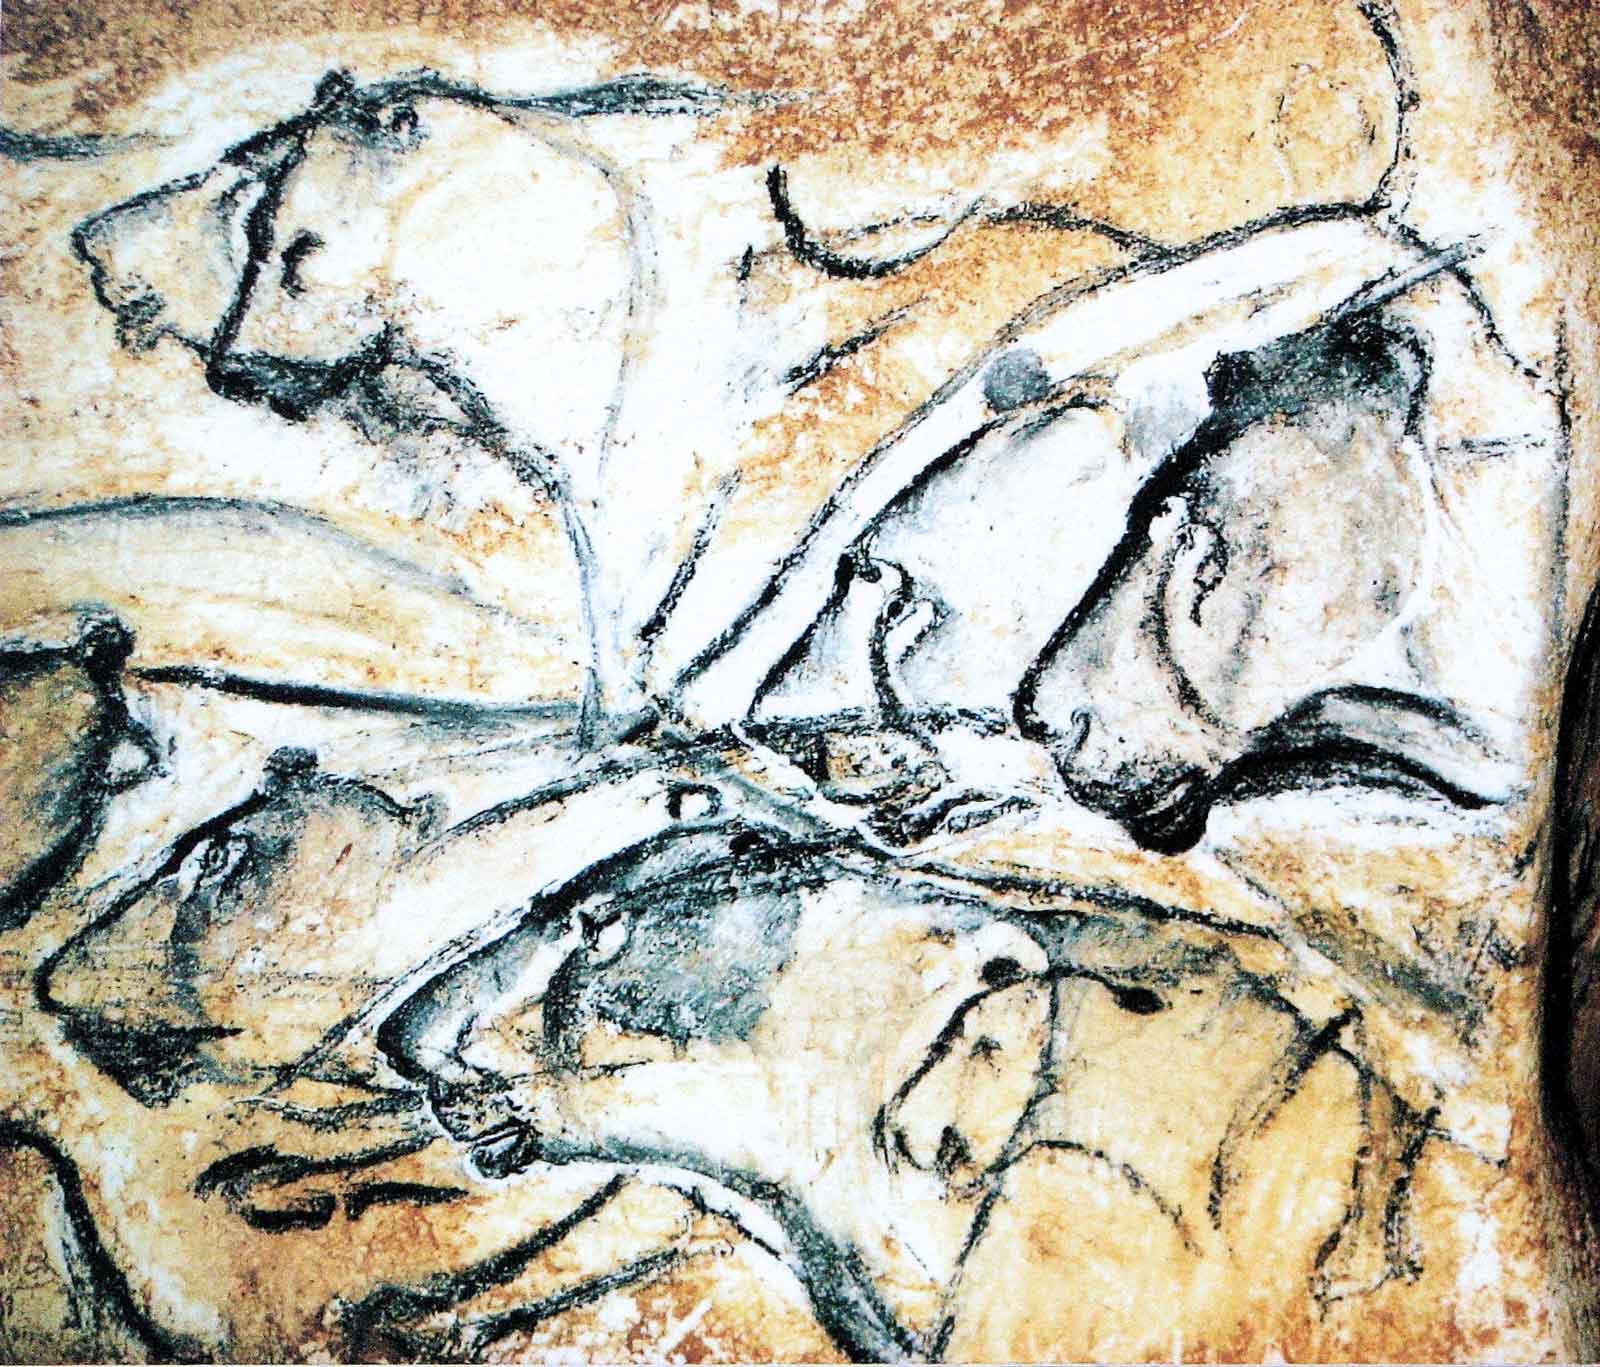 Lions painting, Chauvet Cave